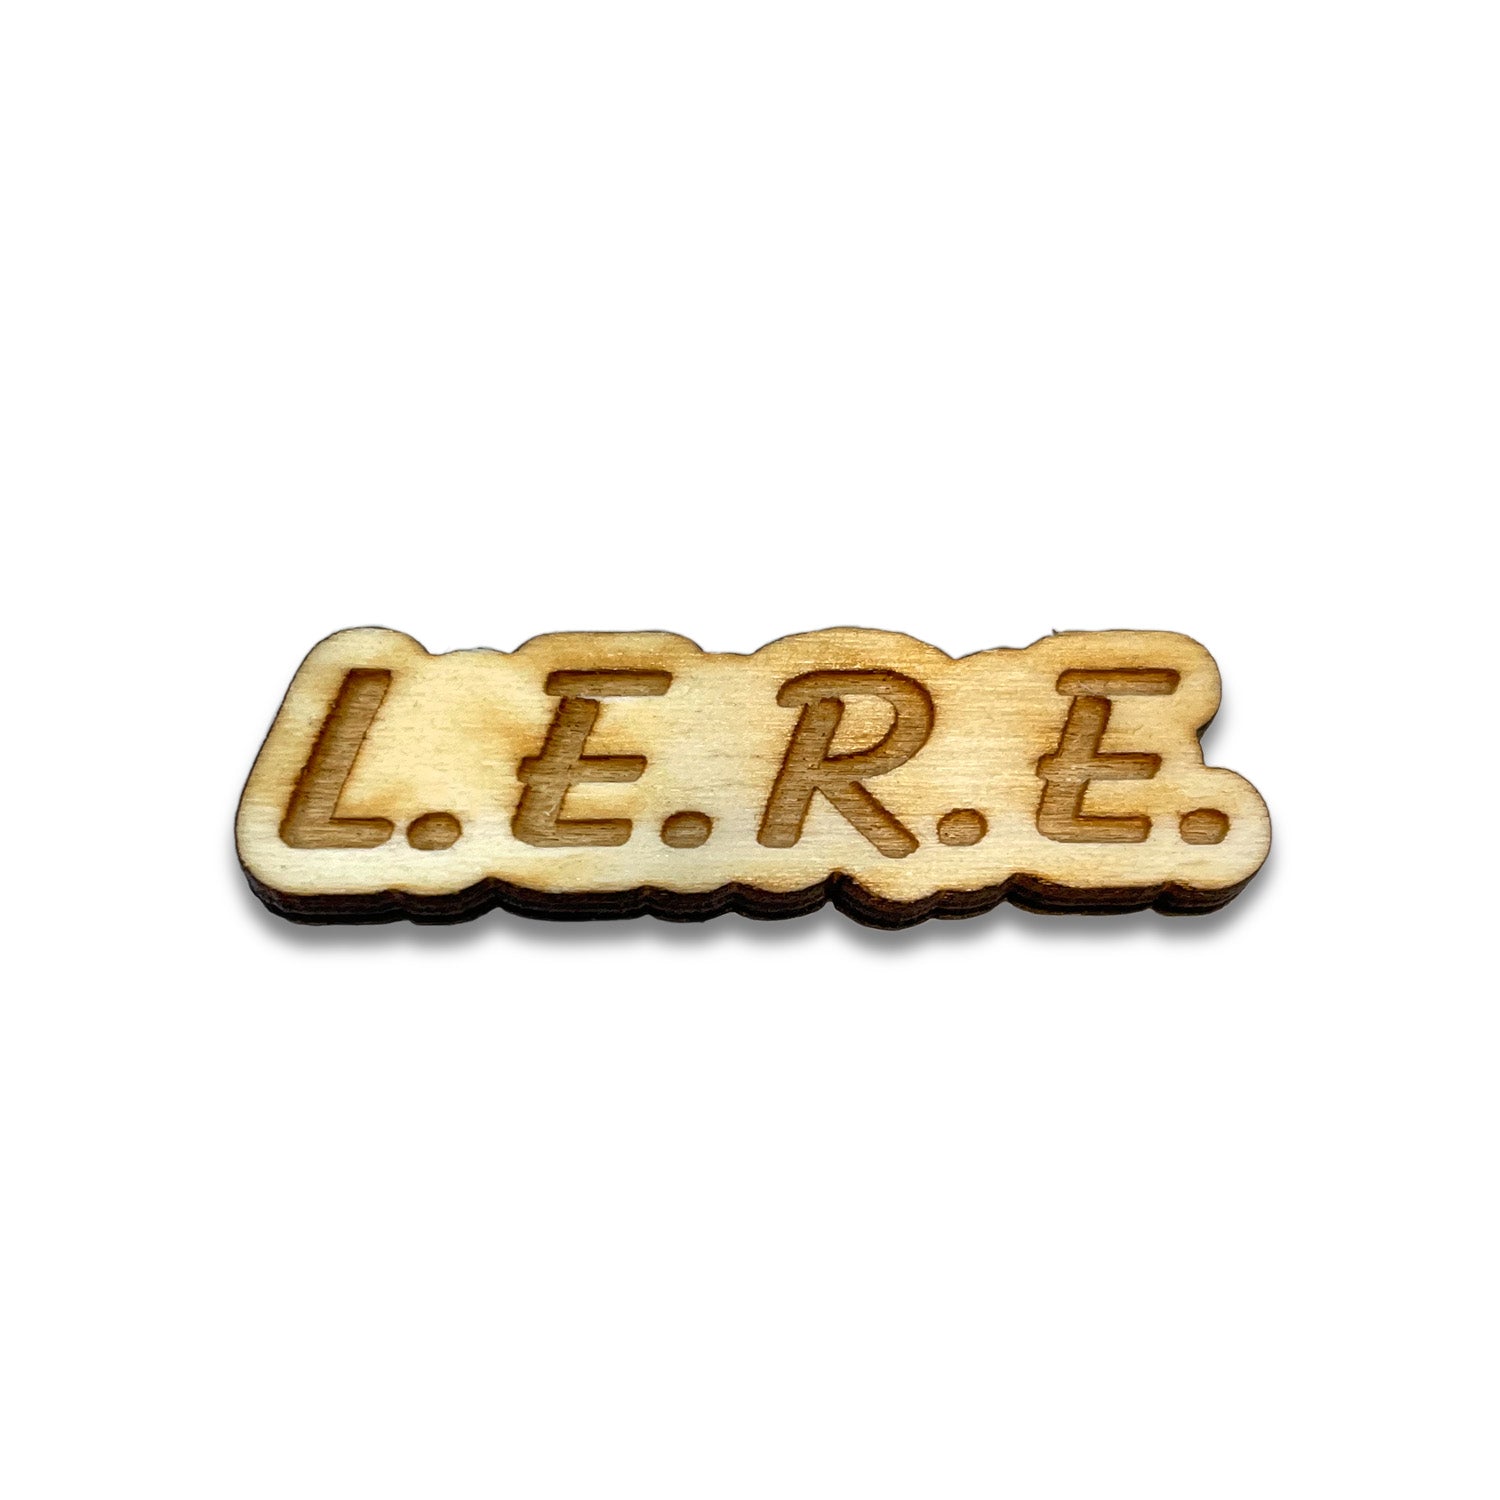 L.E.R.E.